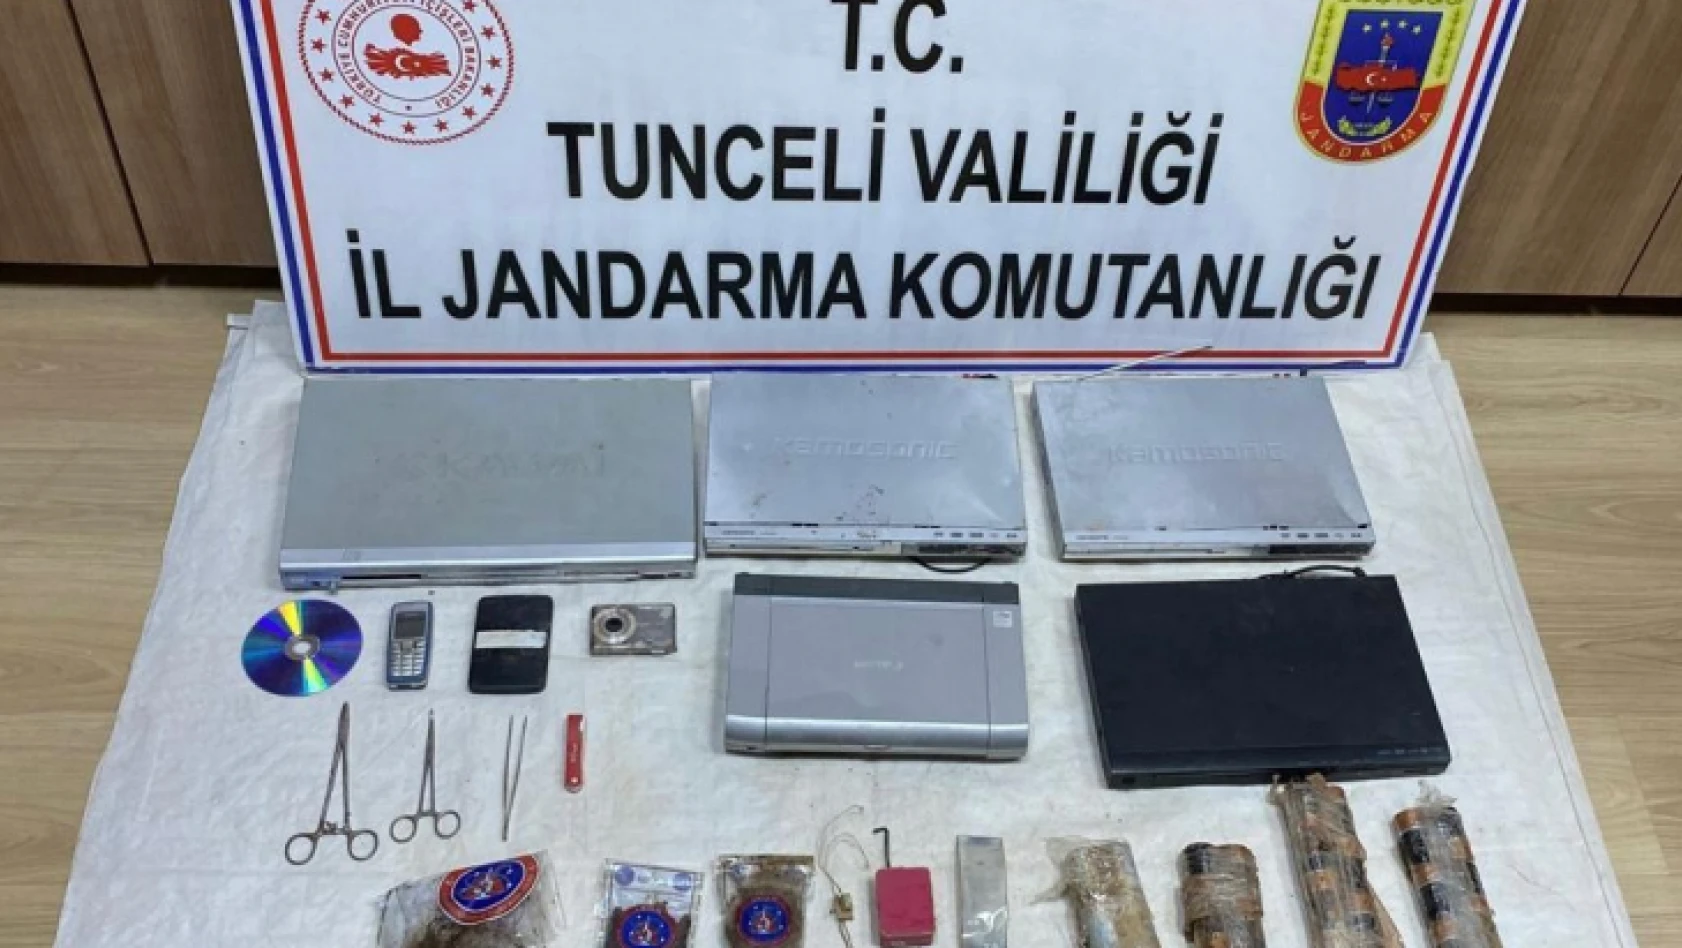 Tunceli'de 6 sığınak içinde EYP ve çok sayıda malzeme ele geçirildi